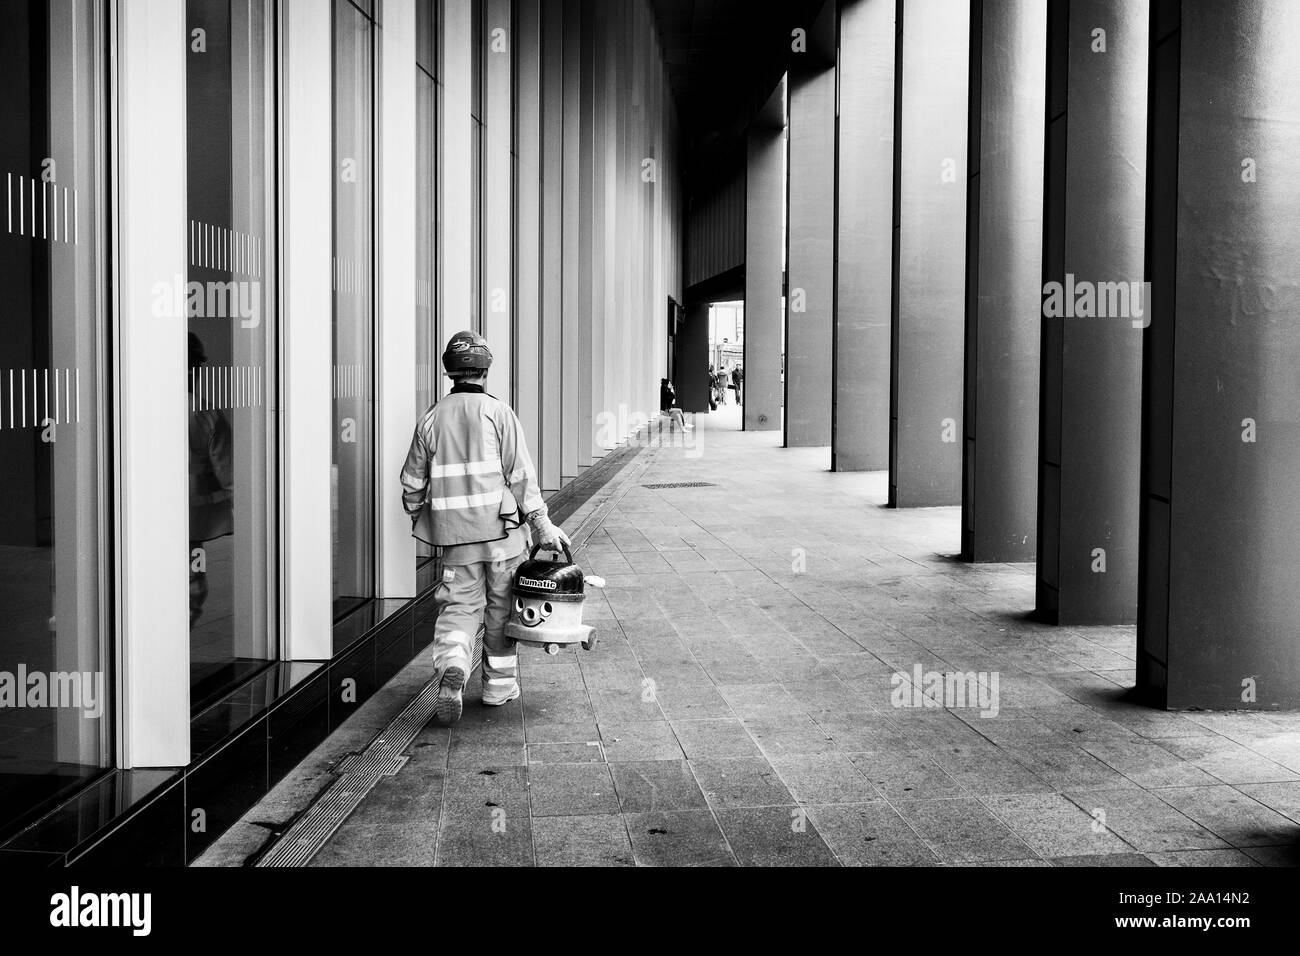 Londres en blanco y negro la fotografía de la calle: Workman llevando Numatic 'Enrique' aspirador en la calle. Foto de stock